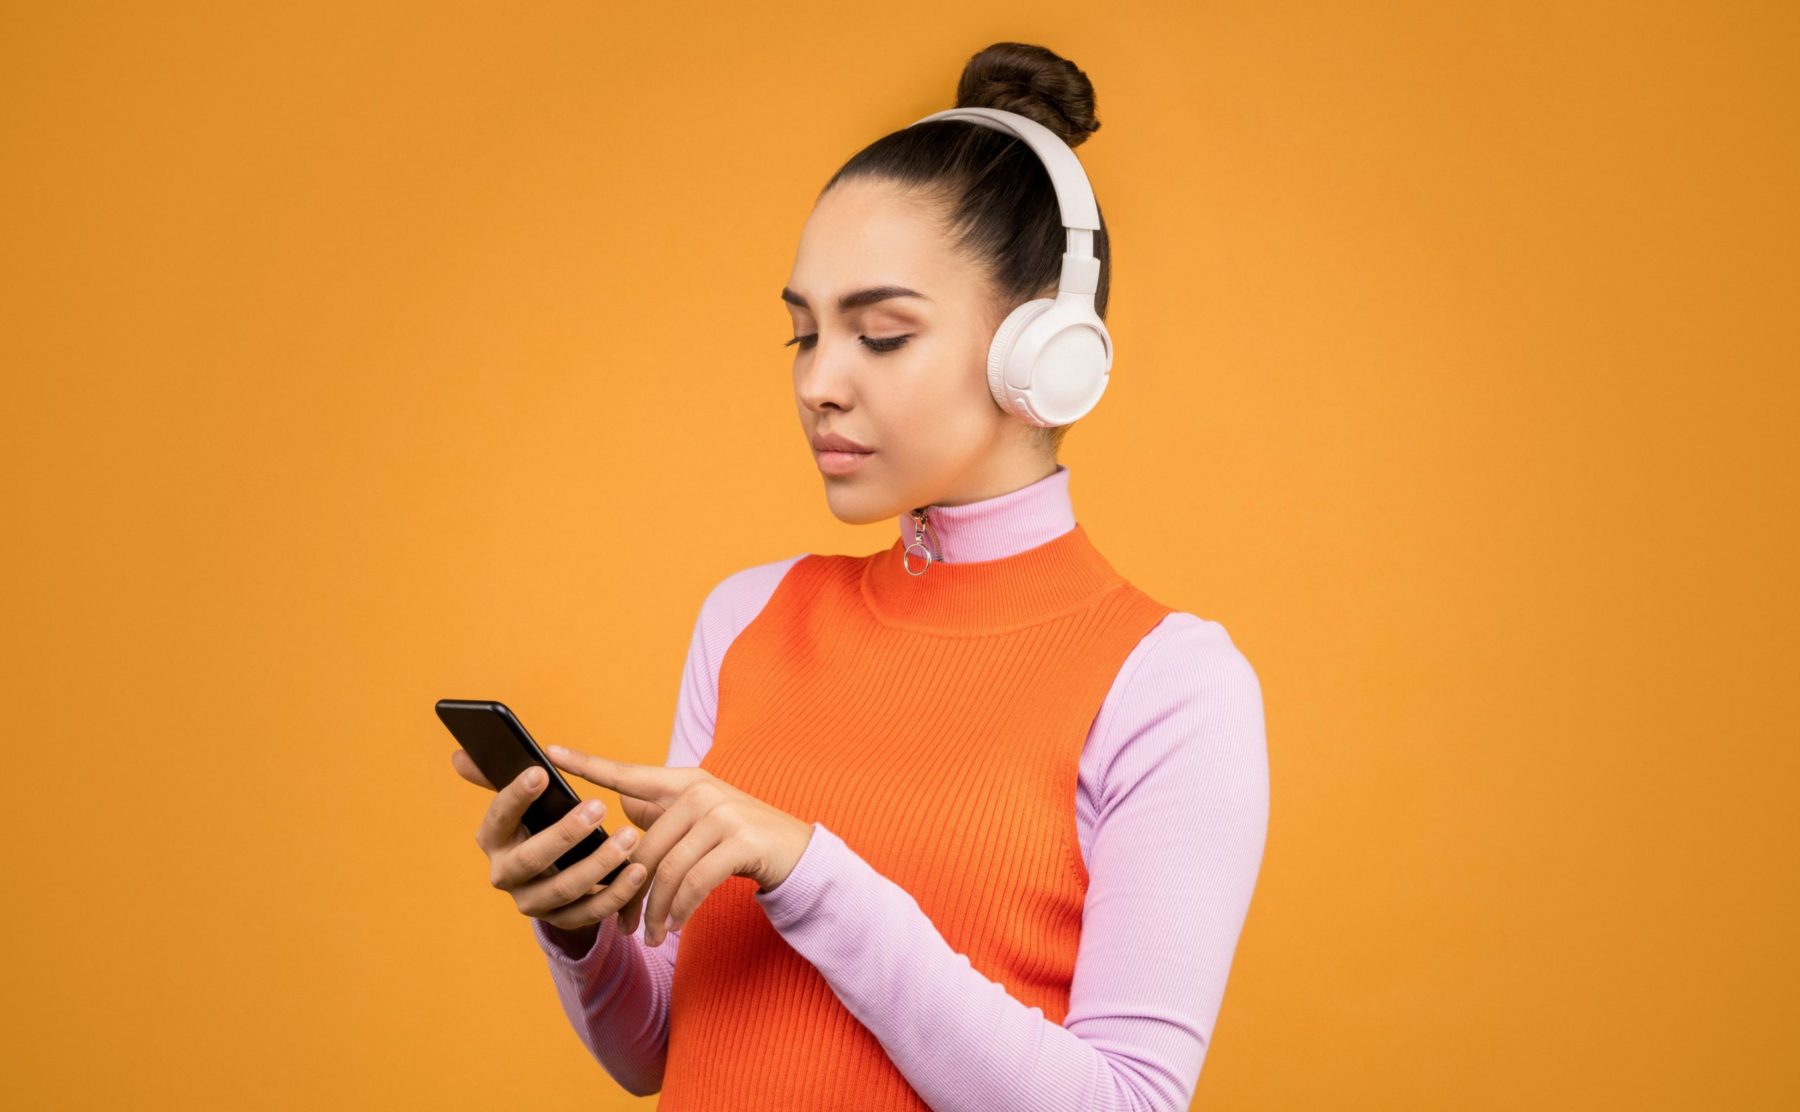 Devant un fond orange, une jeune femme est sur son téléphone. Elle porte un casque pour diffuser de la musique.